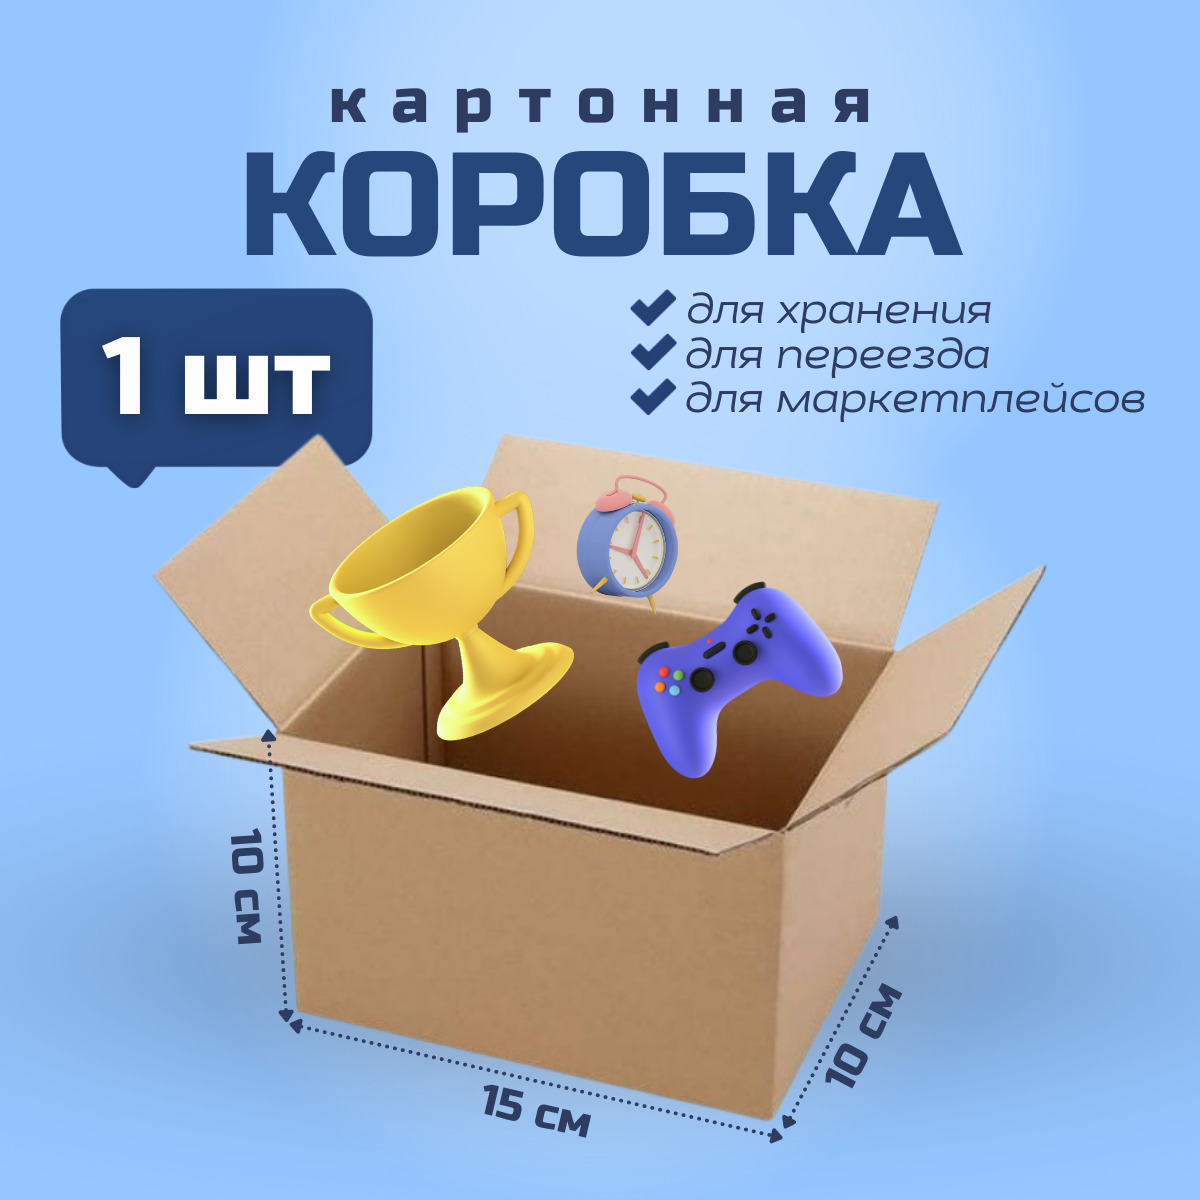 Коробка для переезда и хранения вещей PackVigoda 15х10х10см картон 1 шт